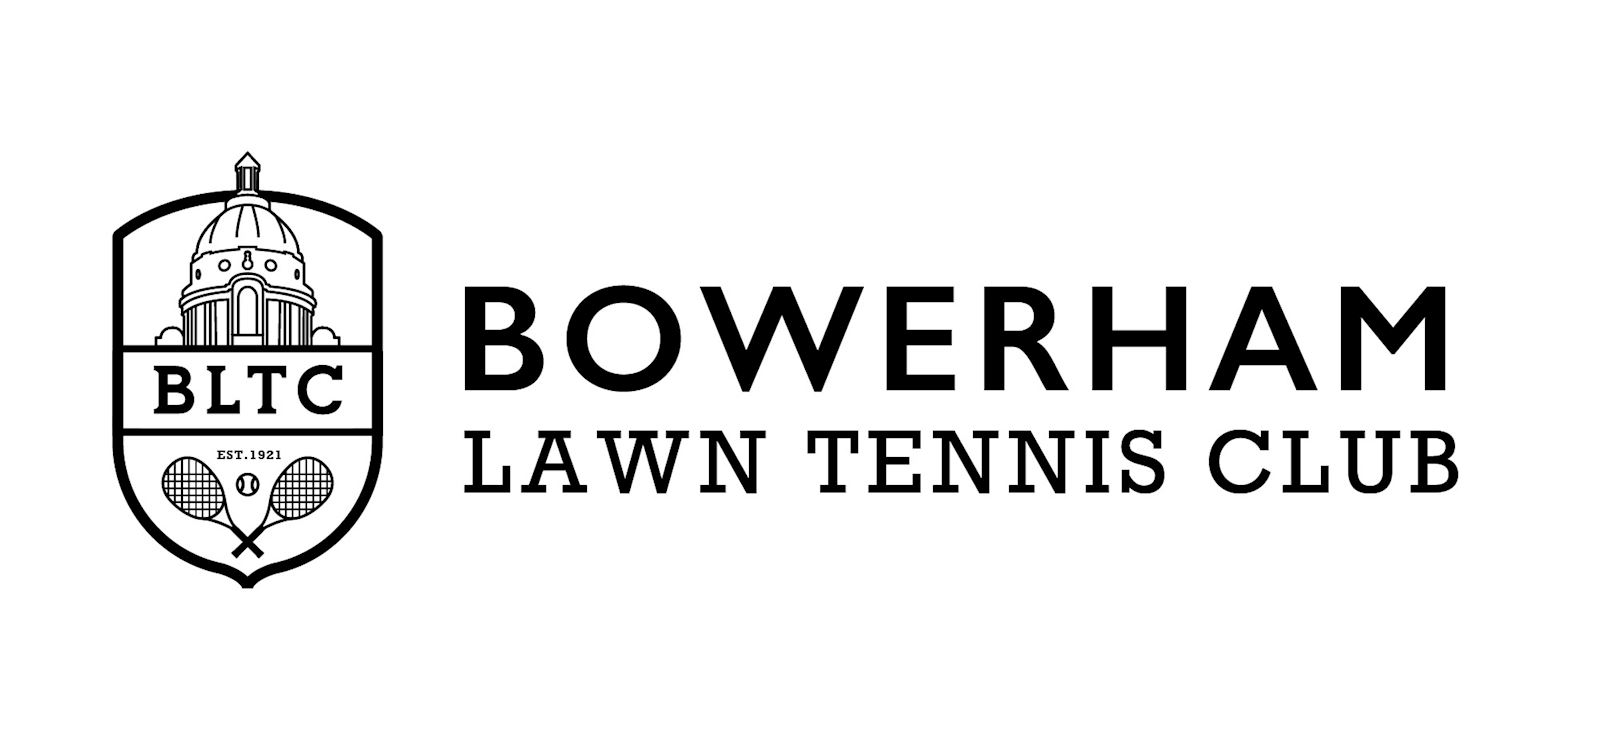 Bowerham Lawn Tennis Club